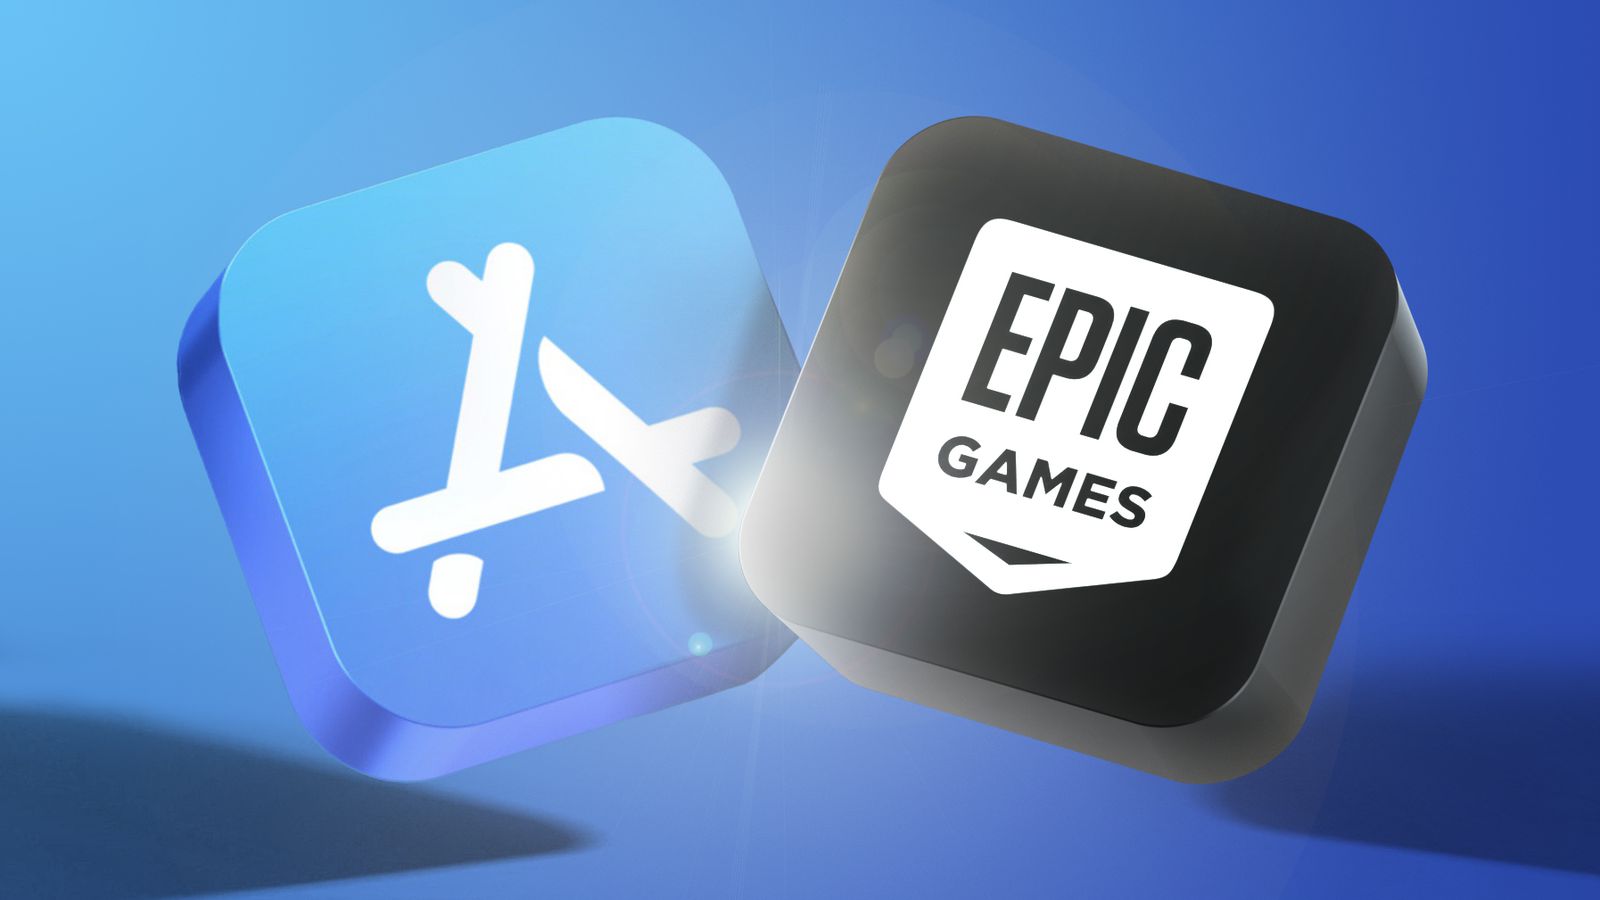 Apple continúa la pelea y desactivó la cuenta de Epic Games